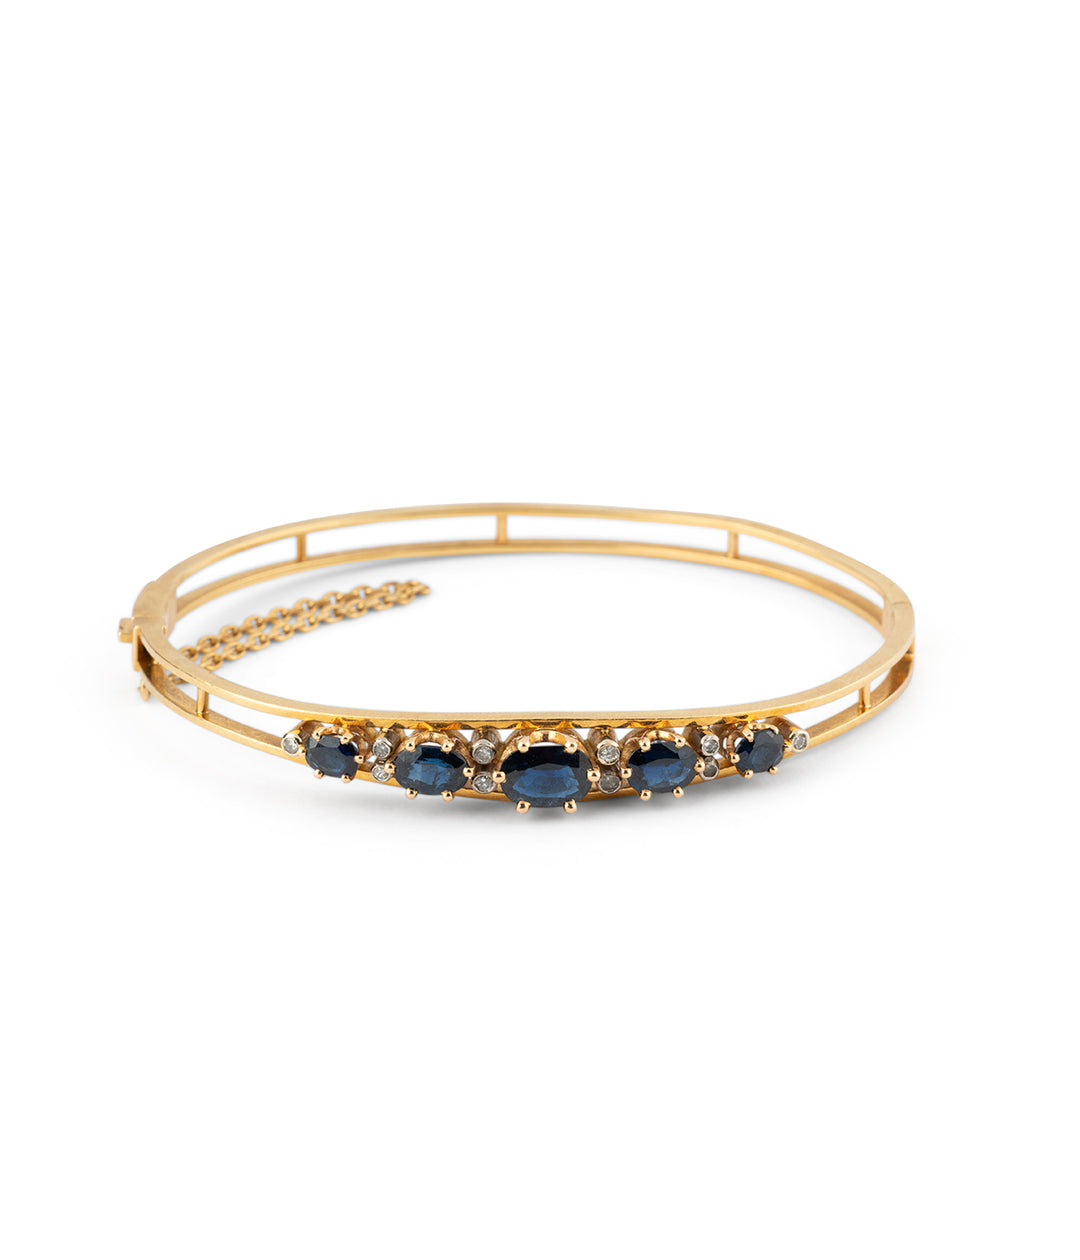 Antique sapphire bangle bracelet Ioustina - Caillou Paris